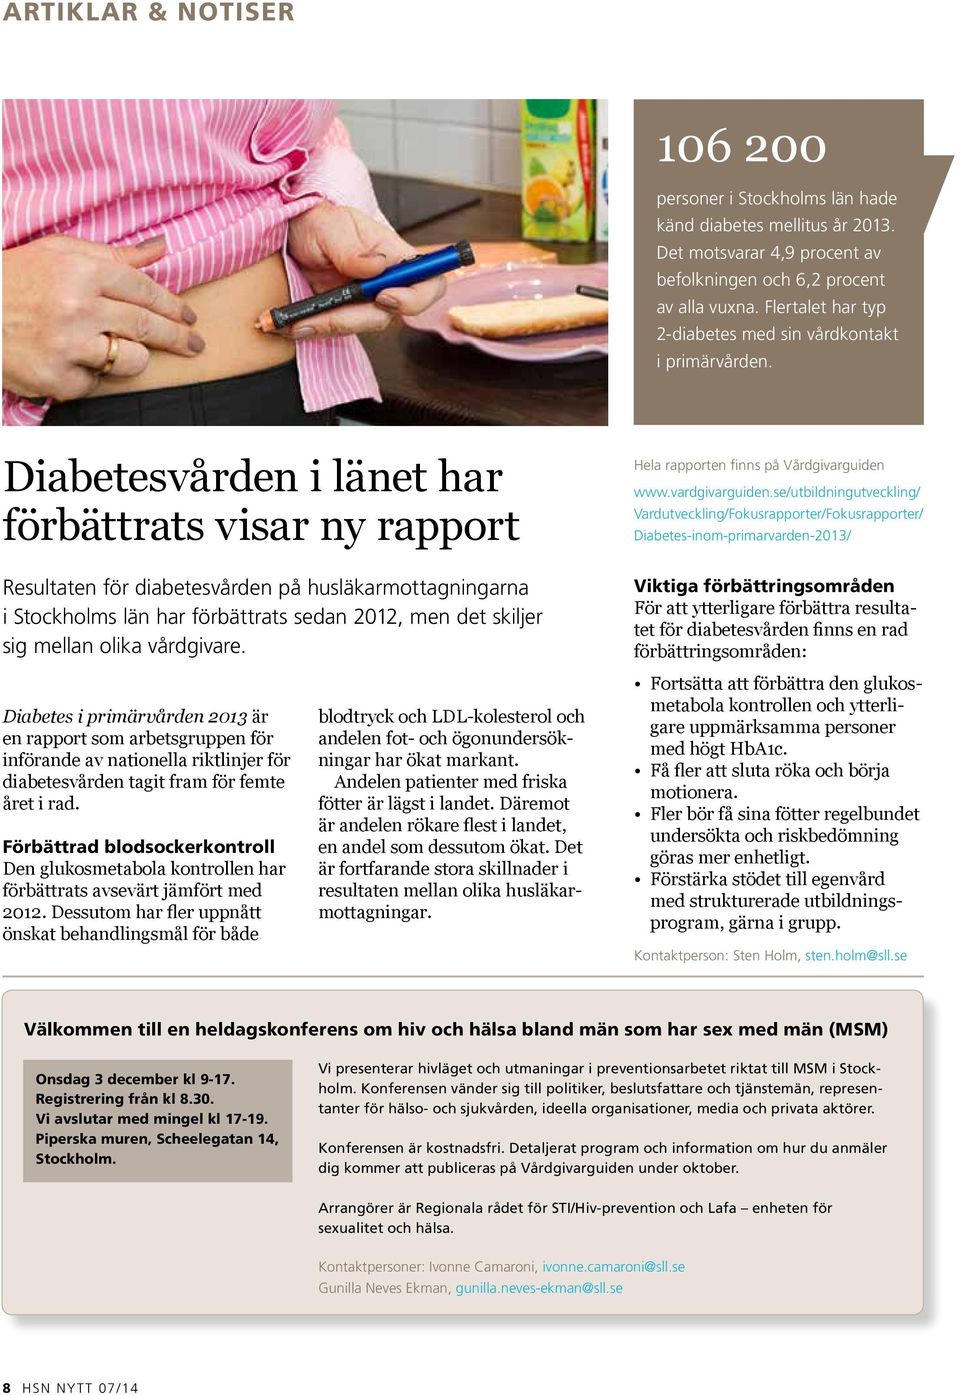 Diabetesvården i länet har förbättrats visar ny rapport Resultaten för diabetesvården på husläkarmottagningarna i Stockholms län har förbättrats sedan 2012, men det skiljer sig mellan olika